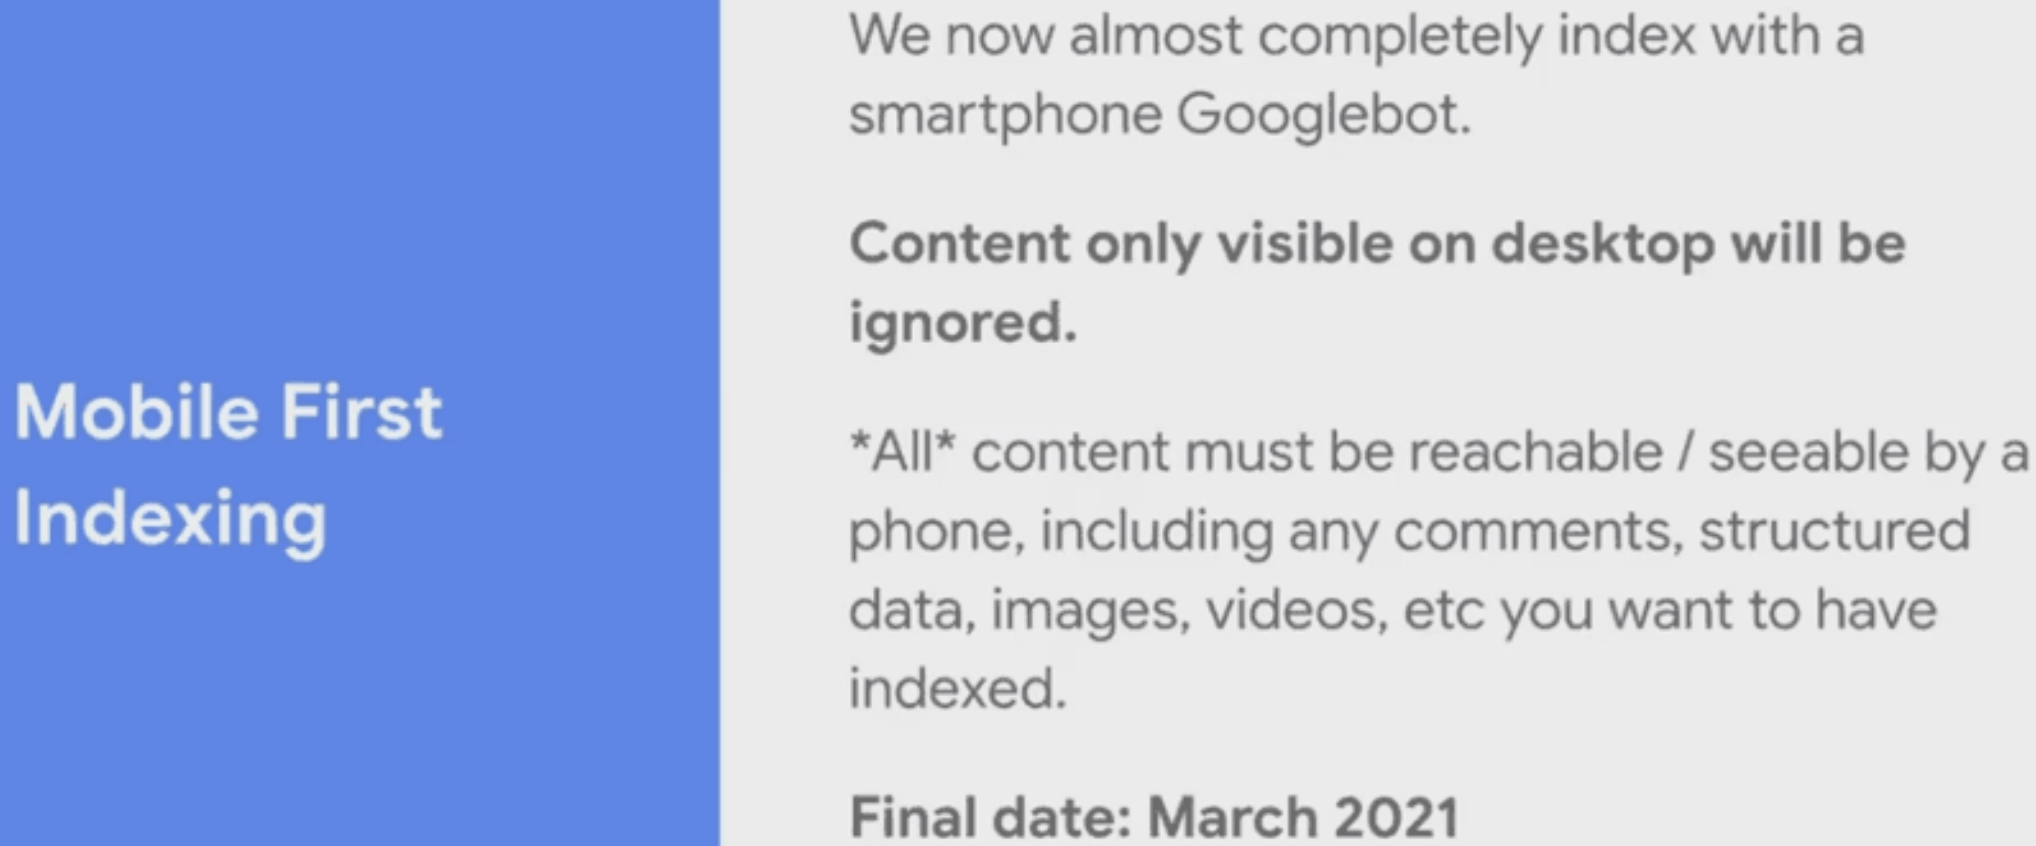 Google: Inhalte, die nur auf dem Desktop zu sehen sind, werden ab März 2021 ignoriert